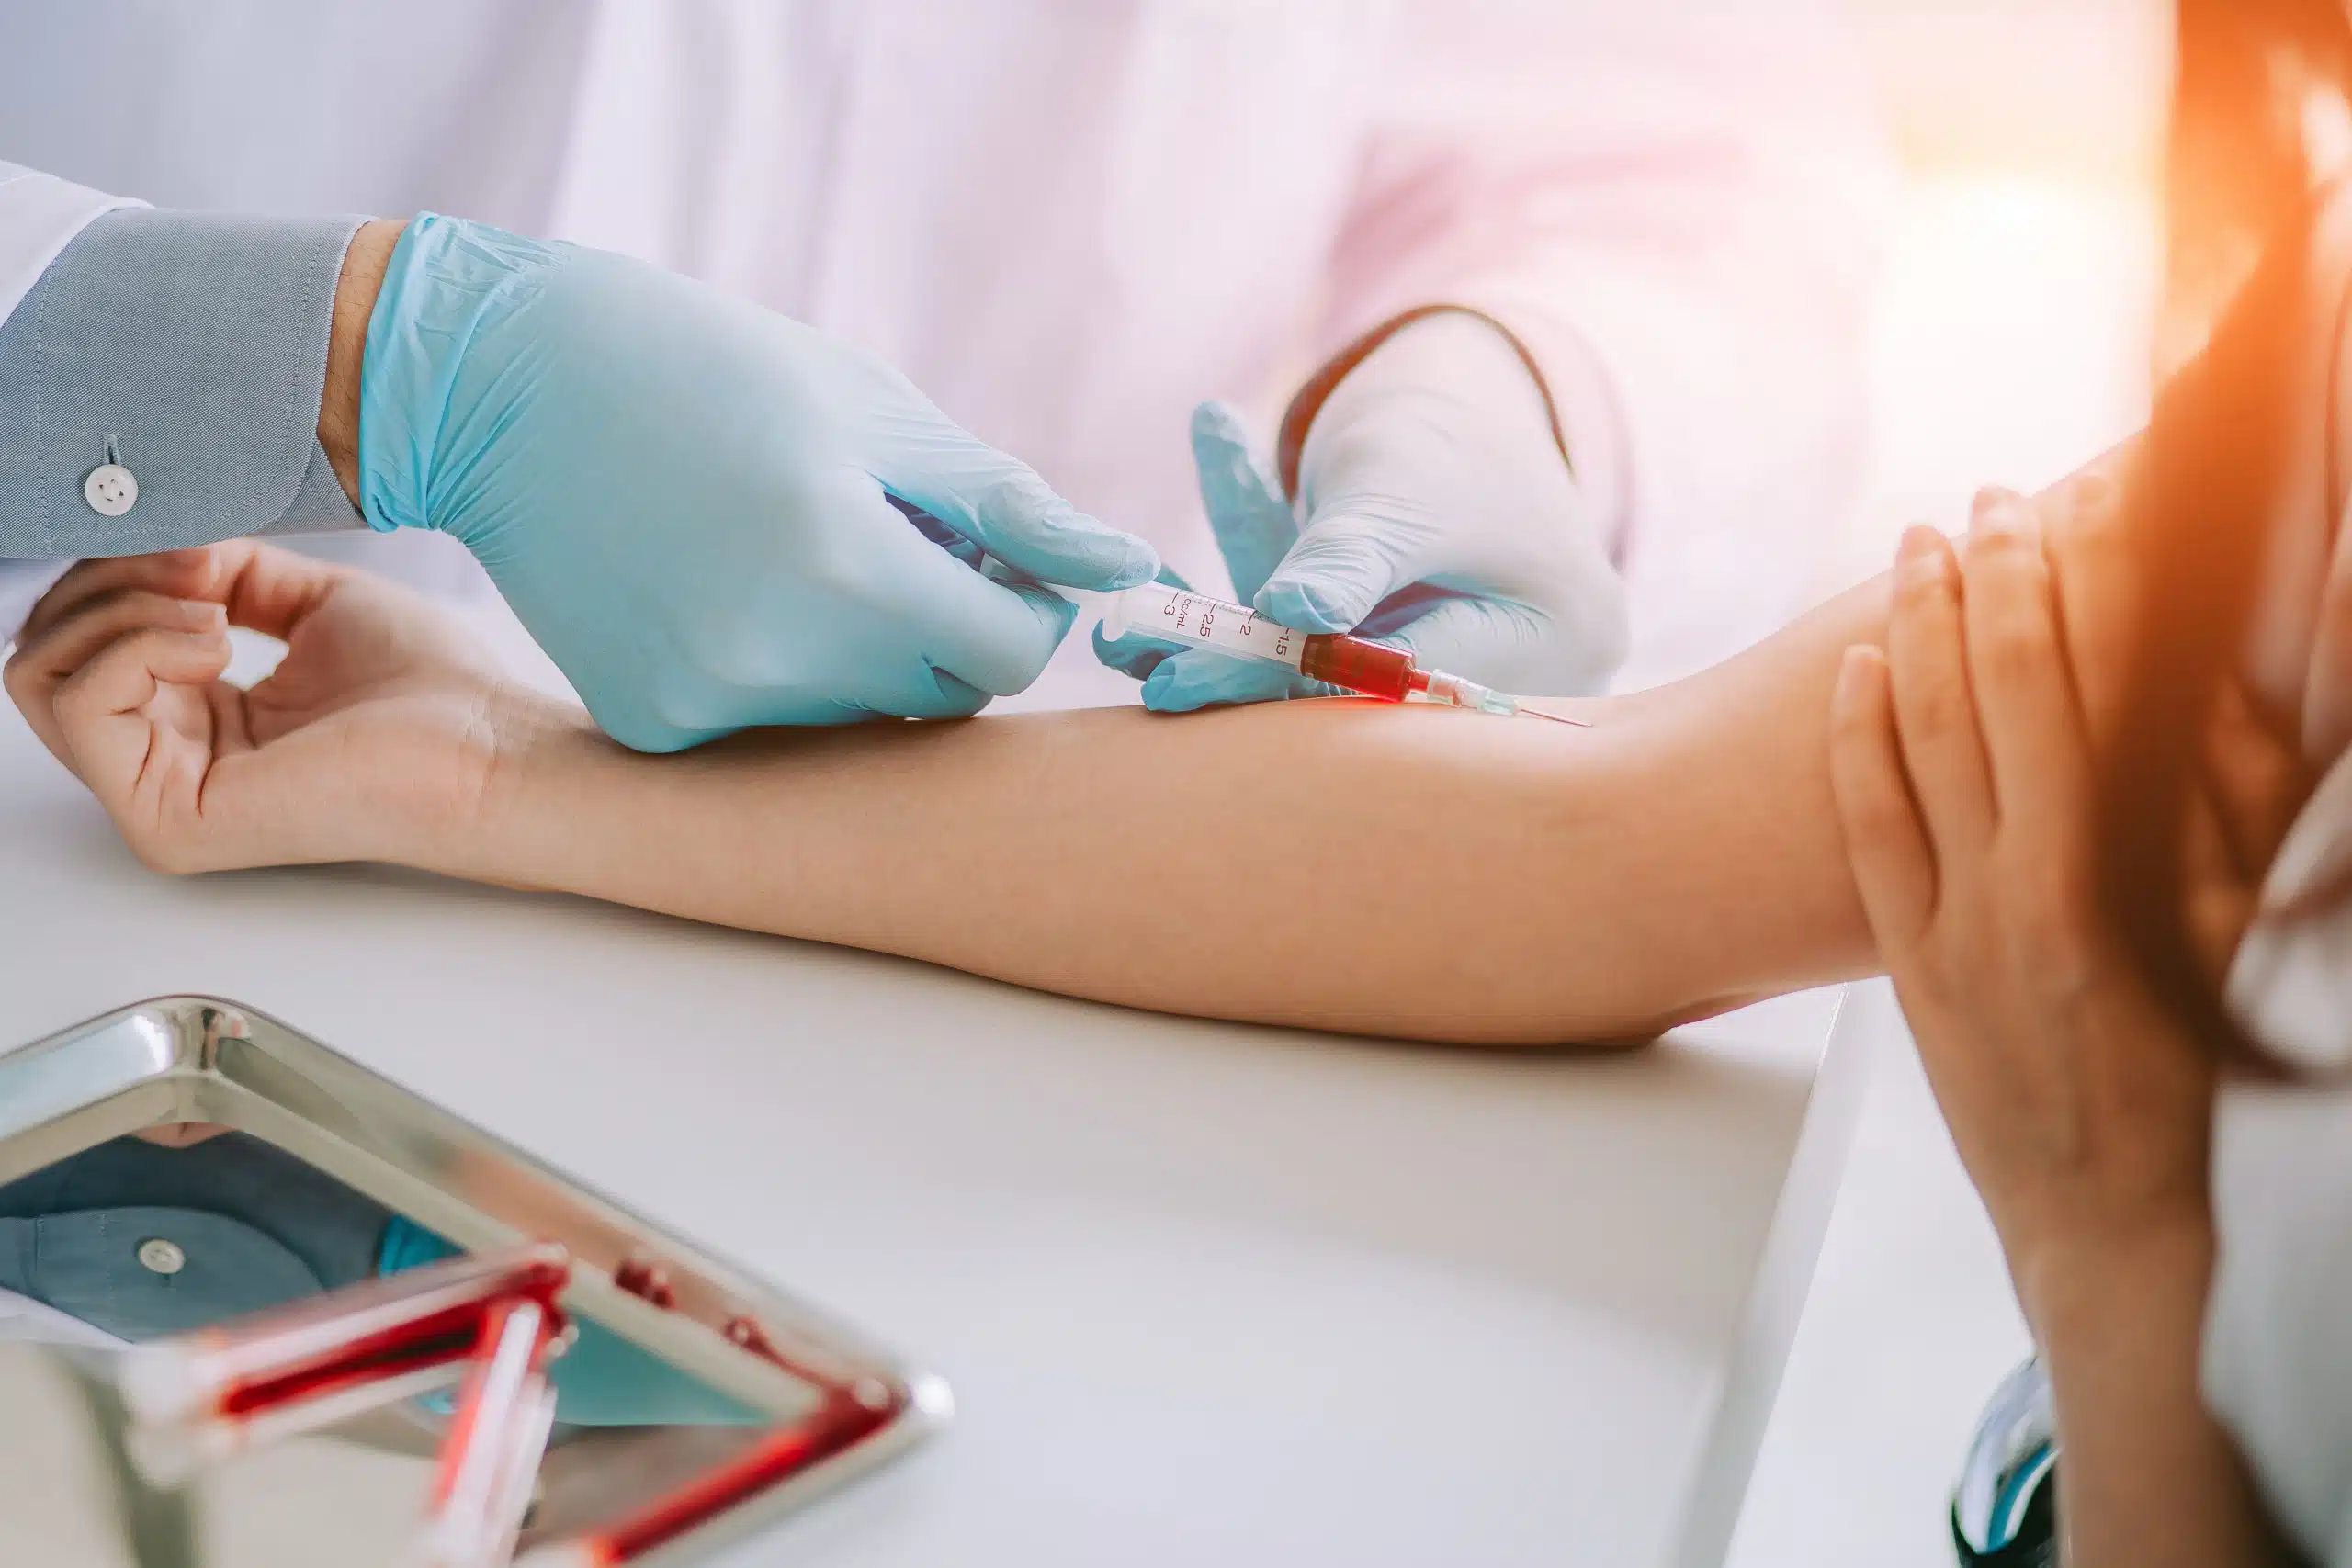 Preparación para análisis de sangre con ayuno - Guía y recomendaciones